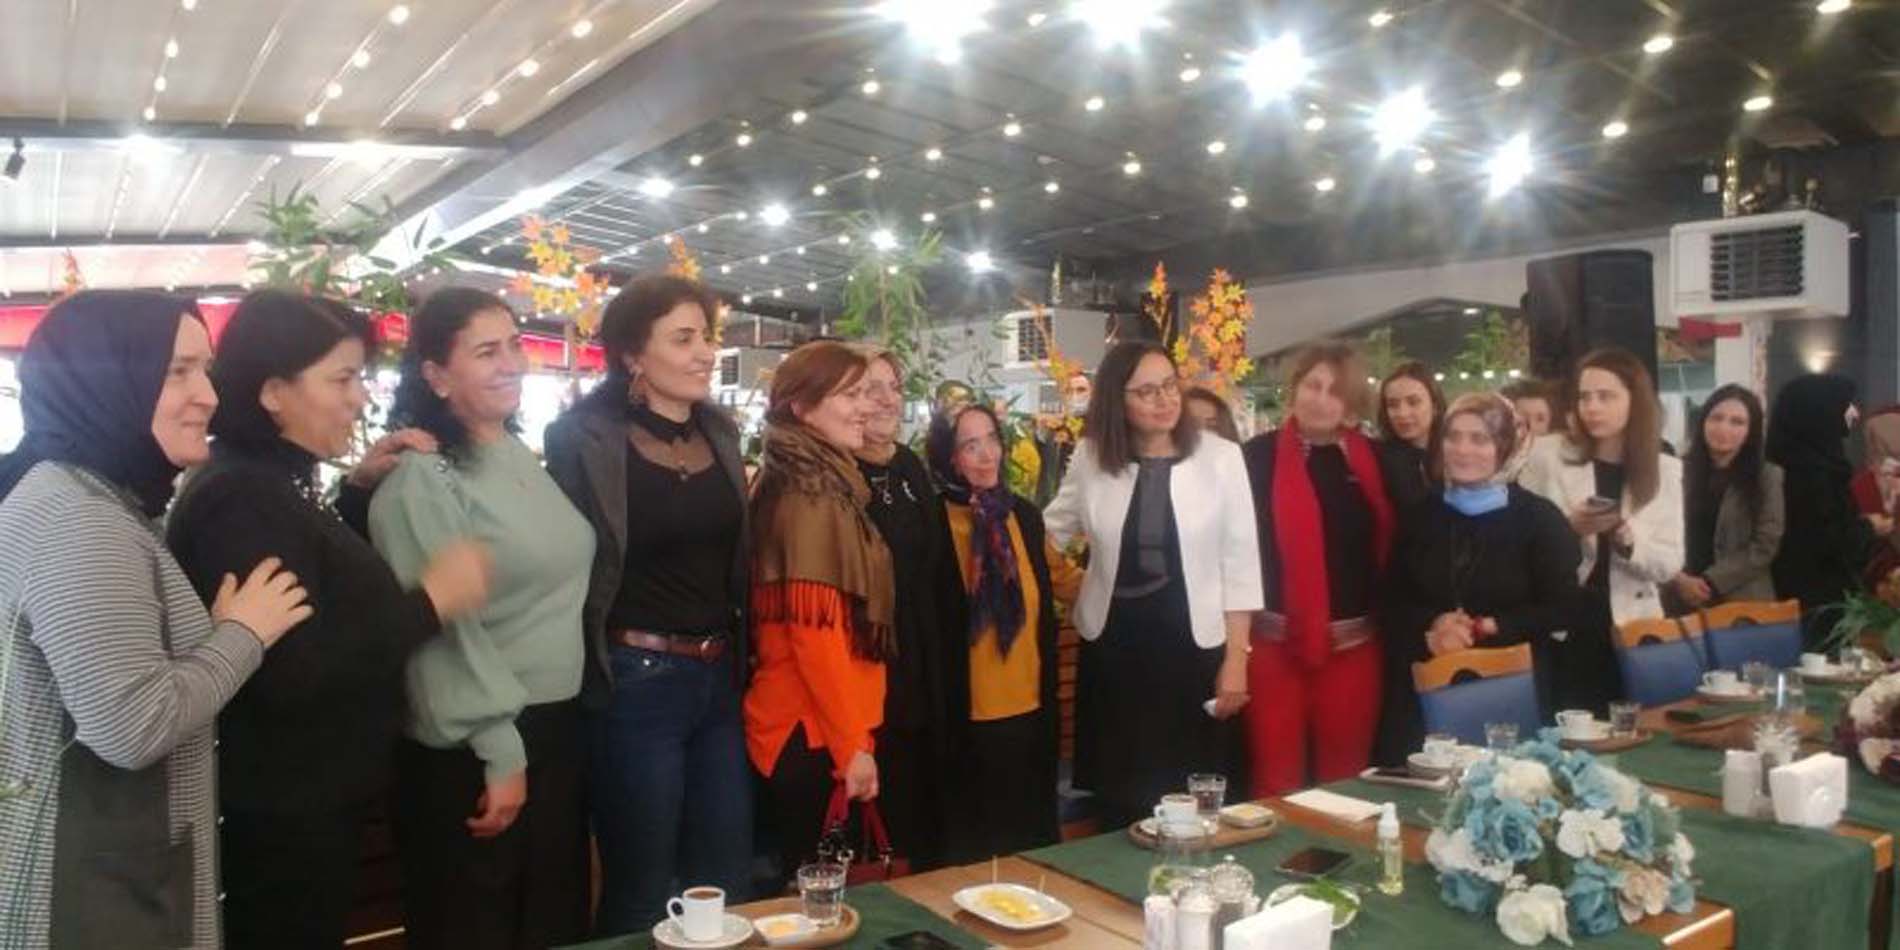 Pendik'li üreten kadınlar bir arada! Başkan Ahmet Cin'in eşi Mehtap Cin ve Pendik Kaymakamı Dr. Hülya Kaya, emekçi kadınlarla bir araya geldi! Kadın, siyaset üstüdür